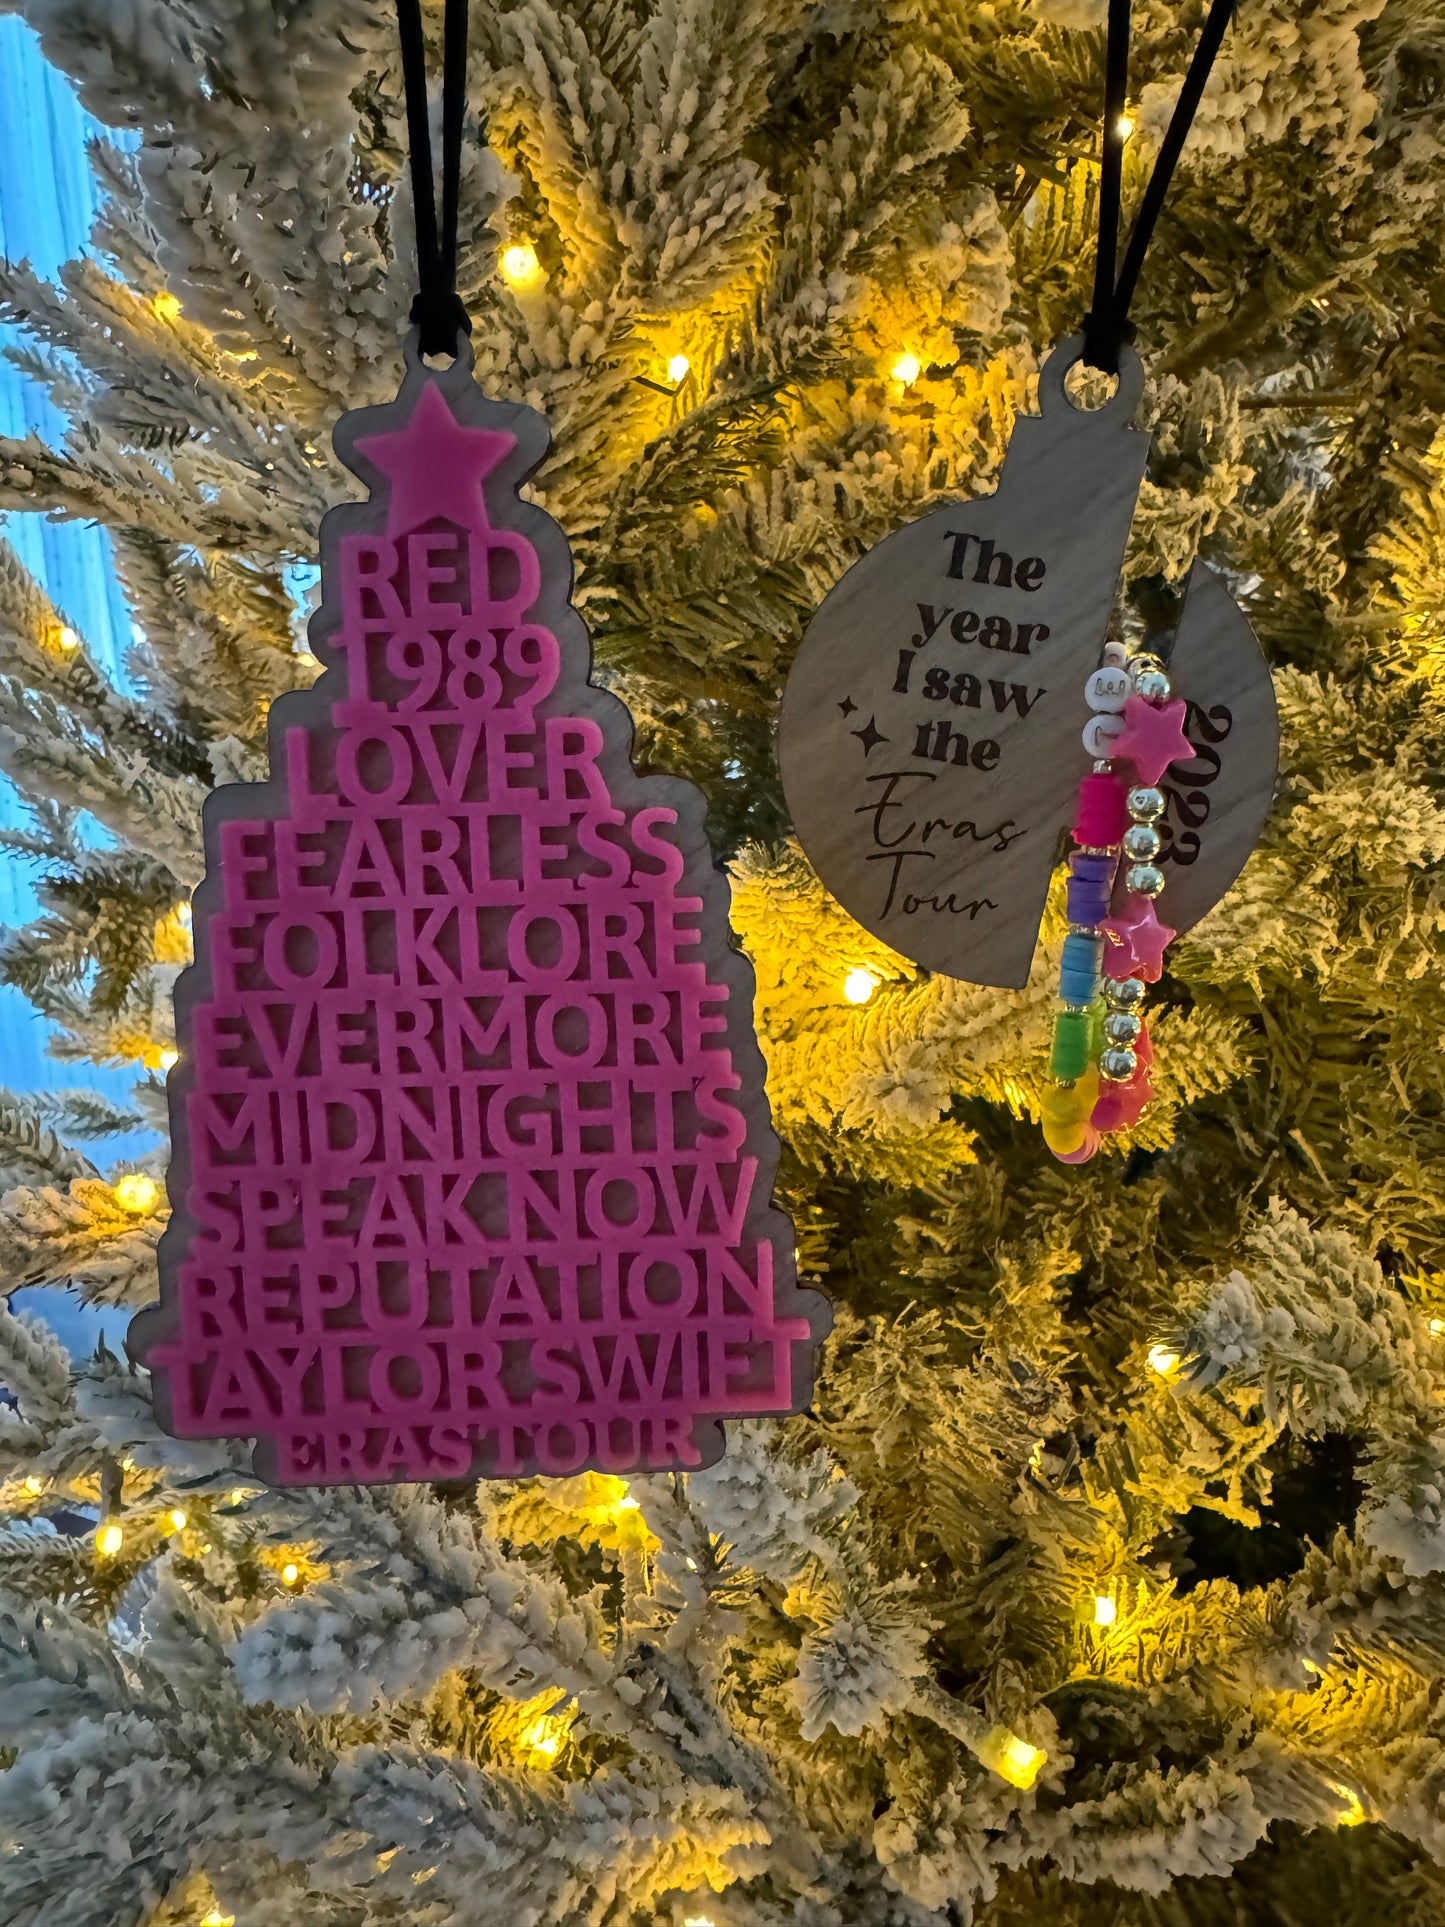 tswift ornaments